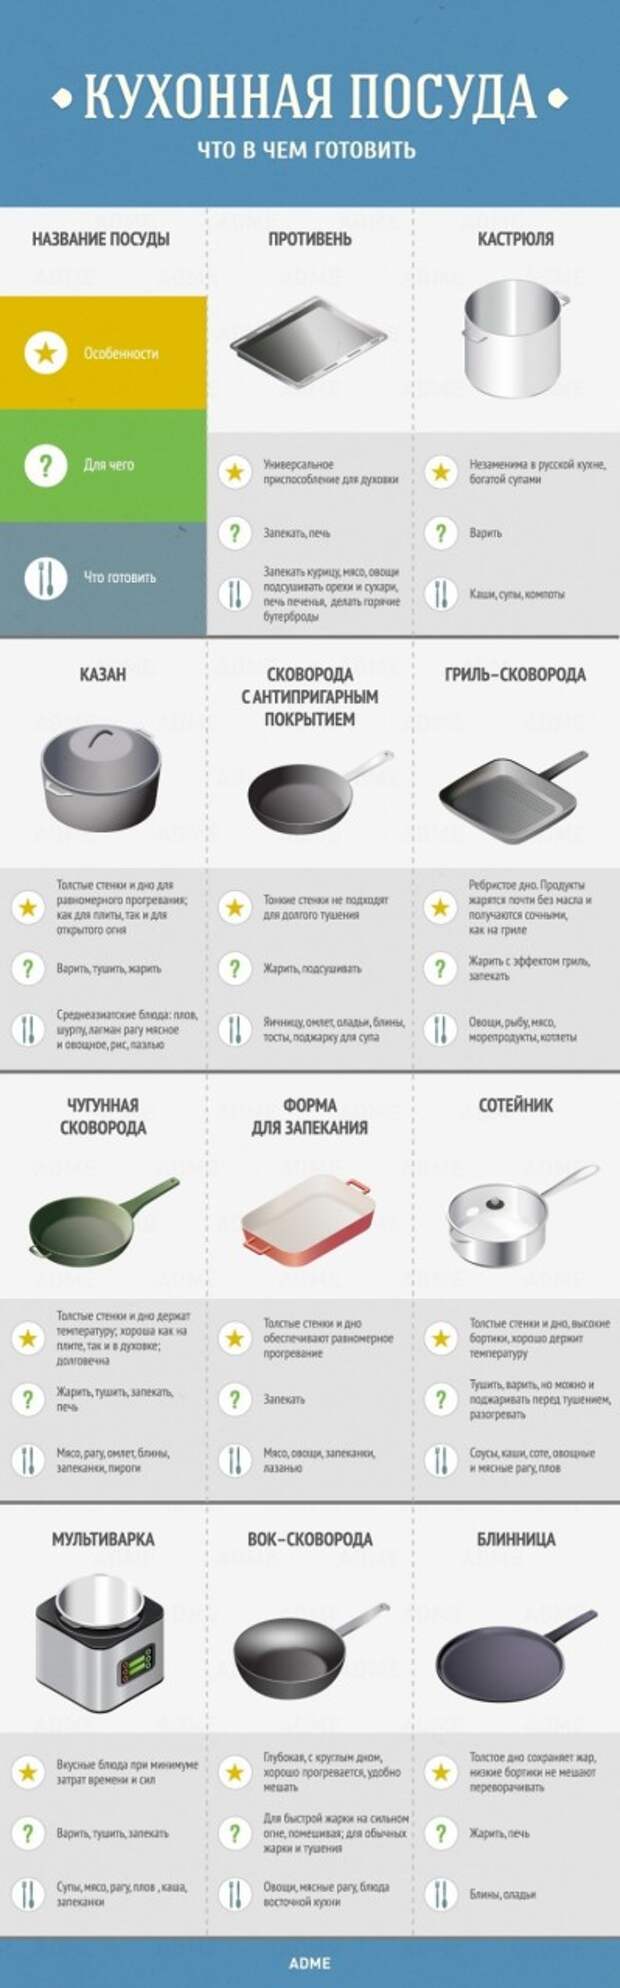 Советы по кухне и готовке